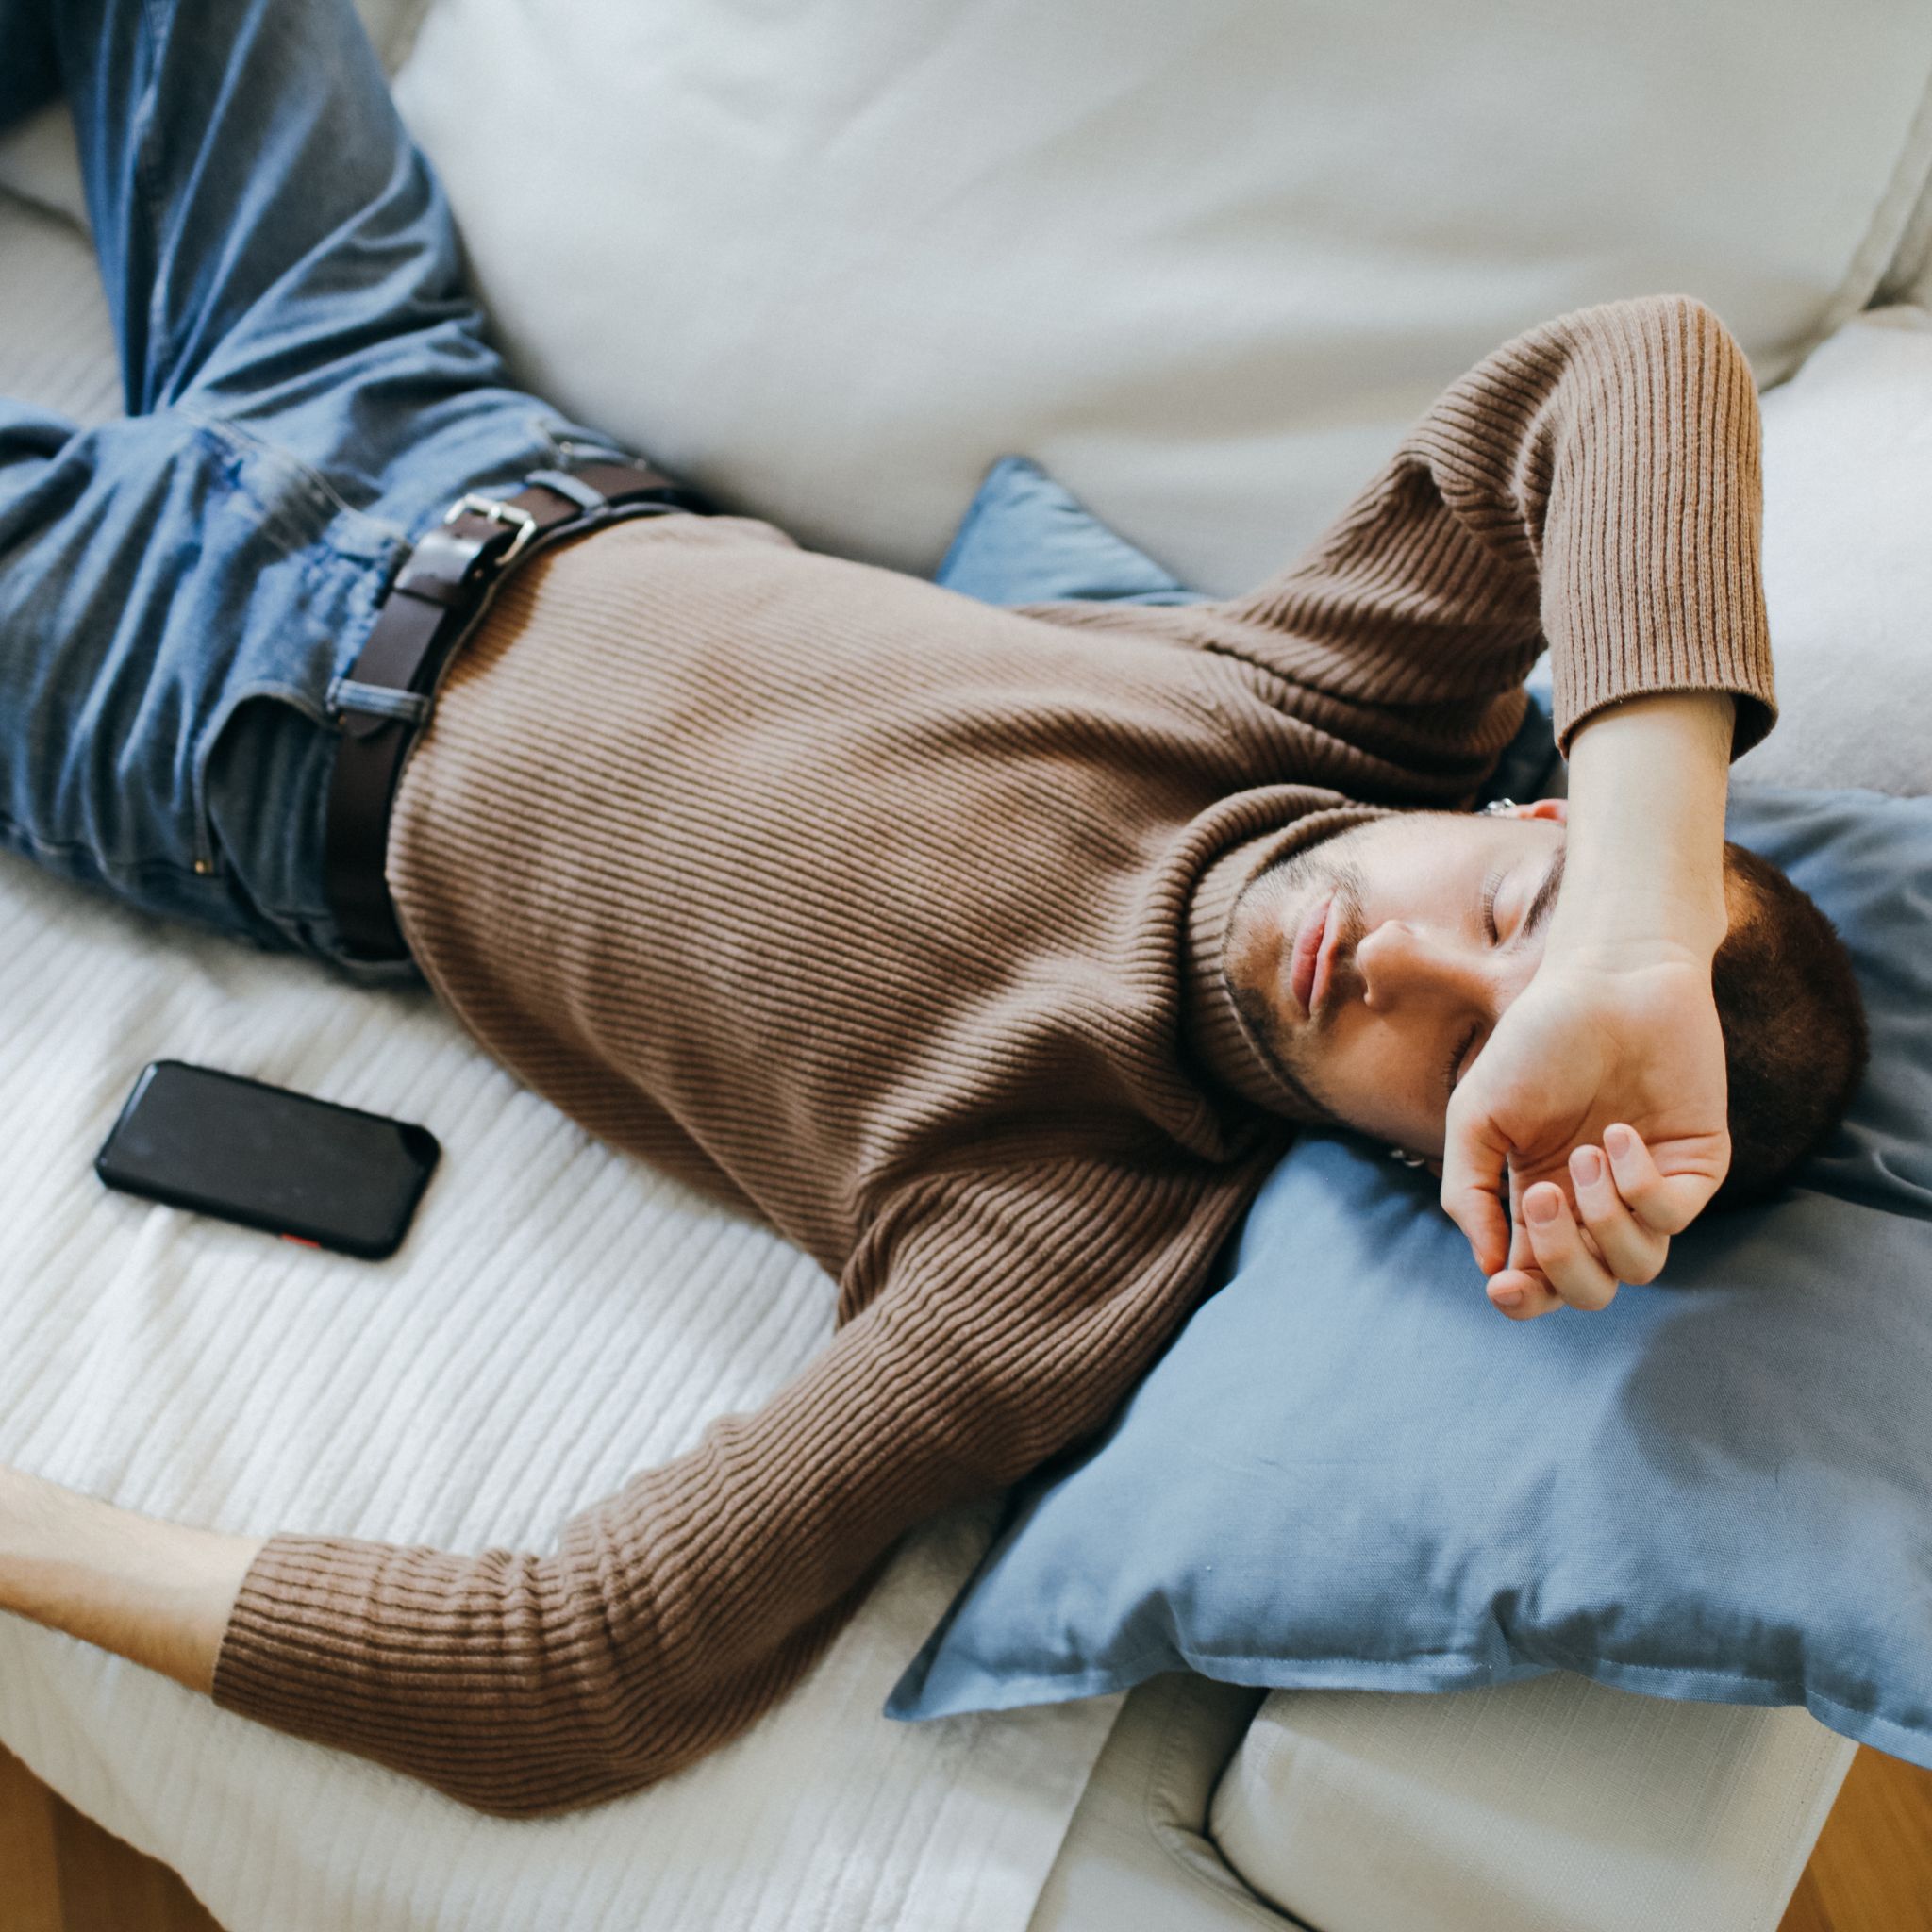 Ist es gefährlich, neben einem Mobiltelefon zu schlafen?